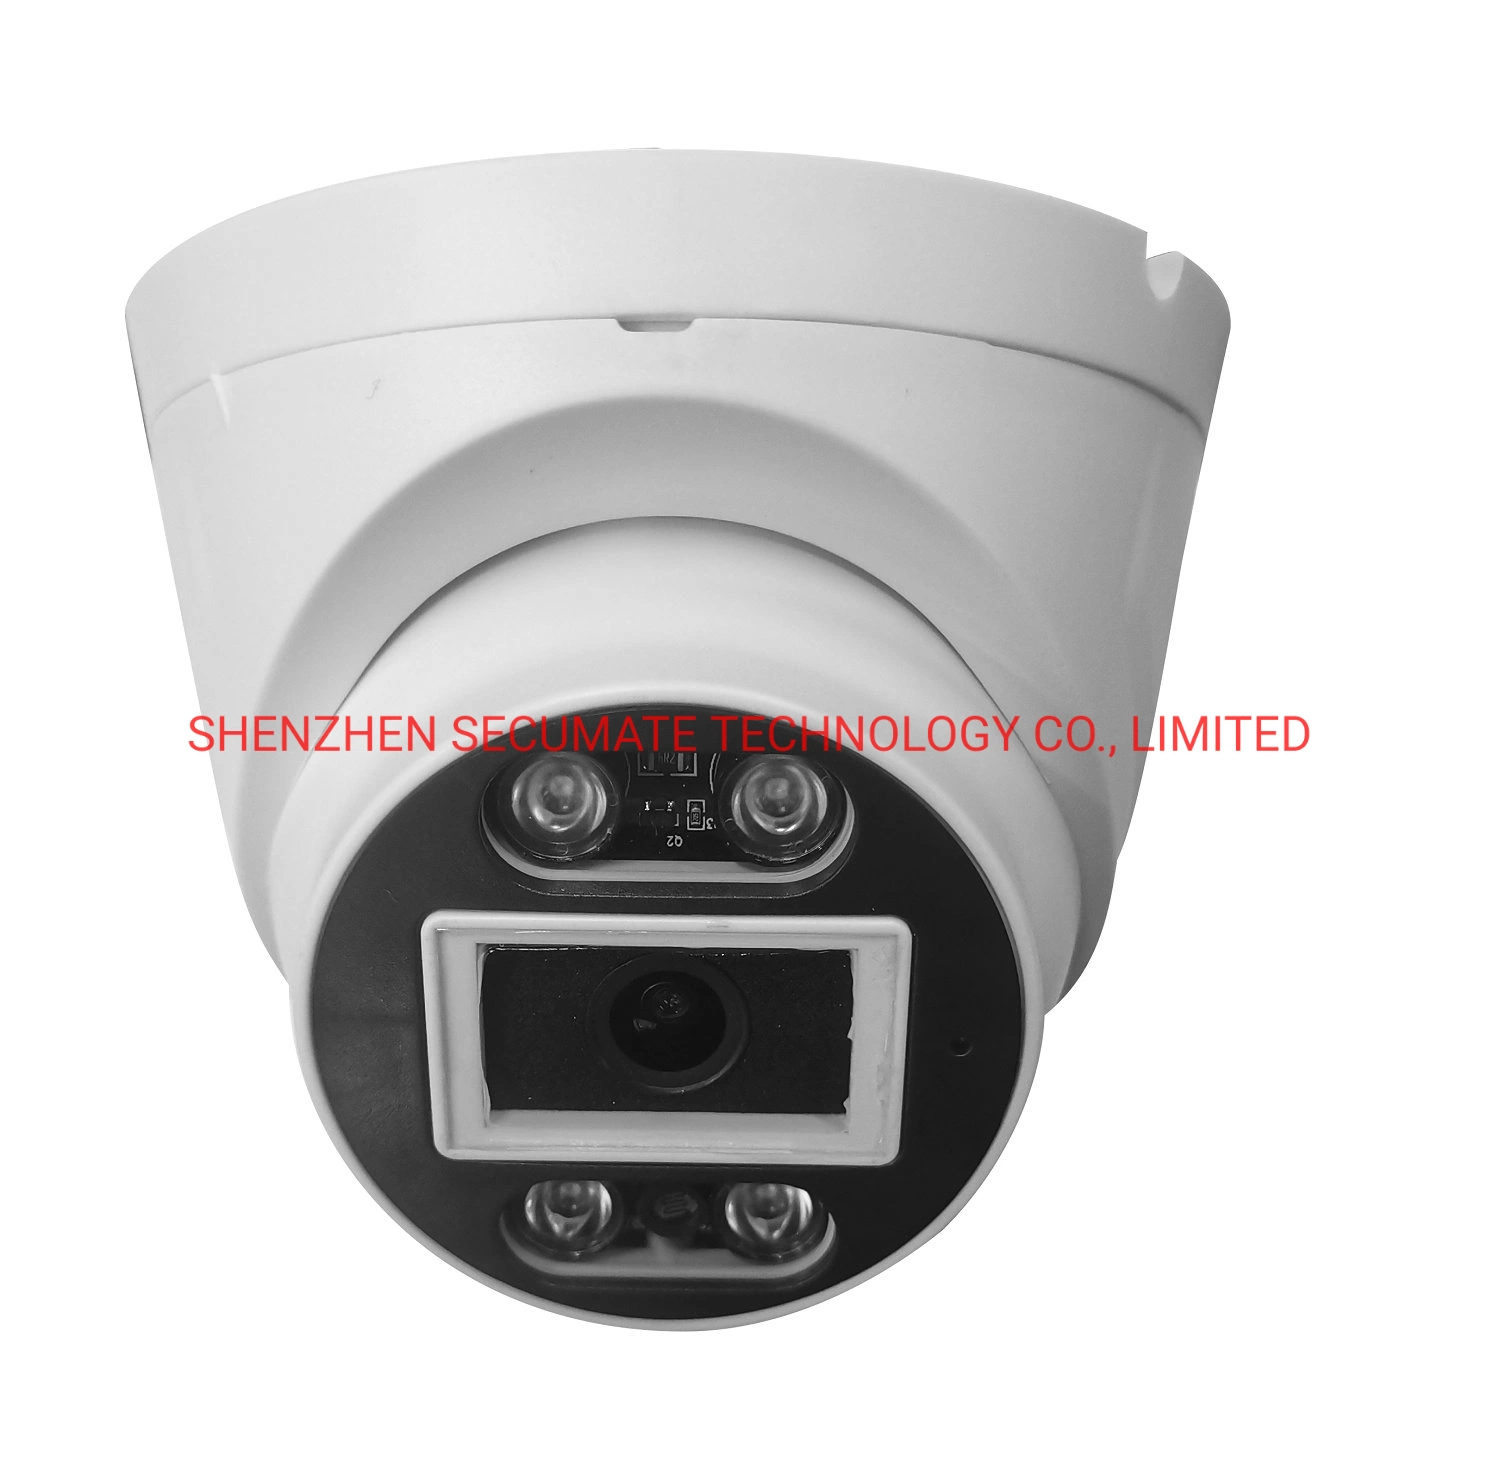 بيع ساخنة كاميرا CCTV التناظرية مورد داخلي أشعة تحت الحمراء سوني ستارلايت كاميرا قبة Ahd بدقة 5 ميجا بكسل